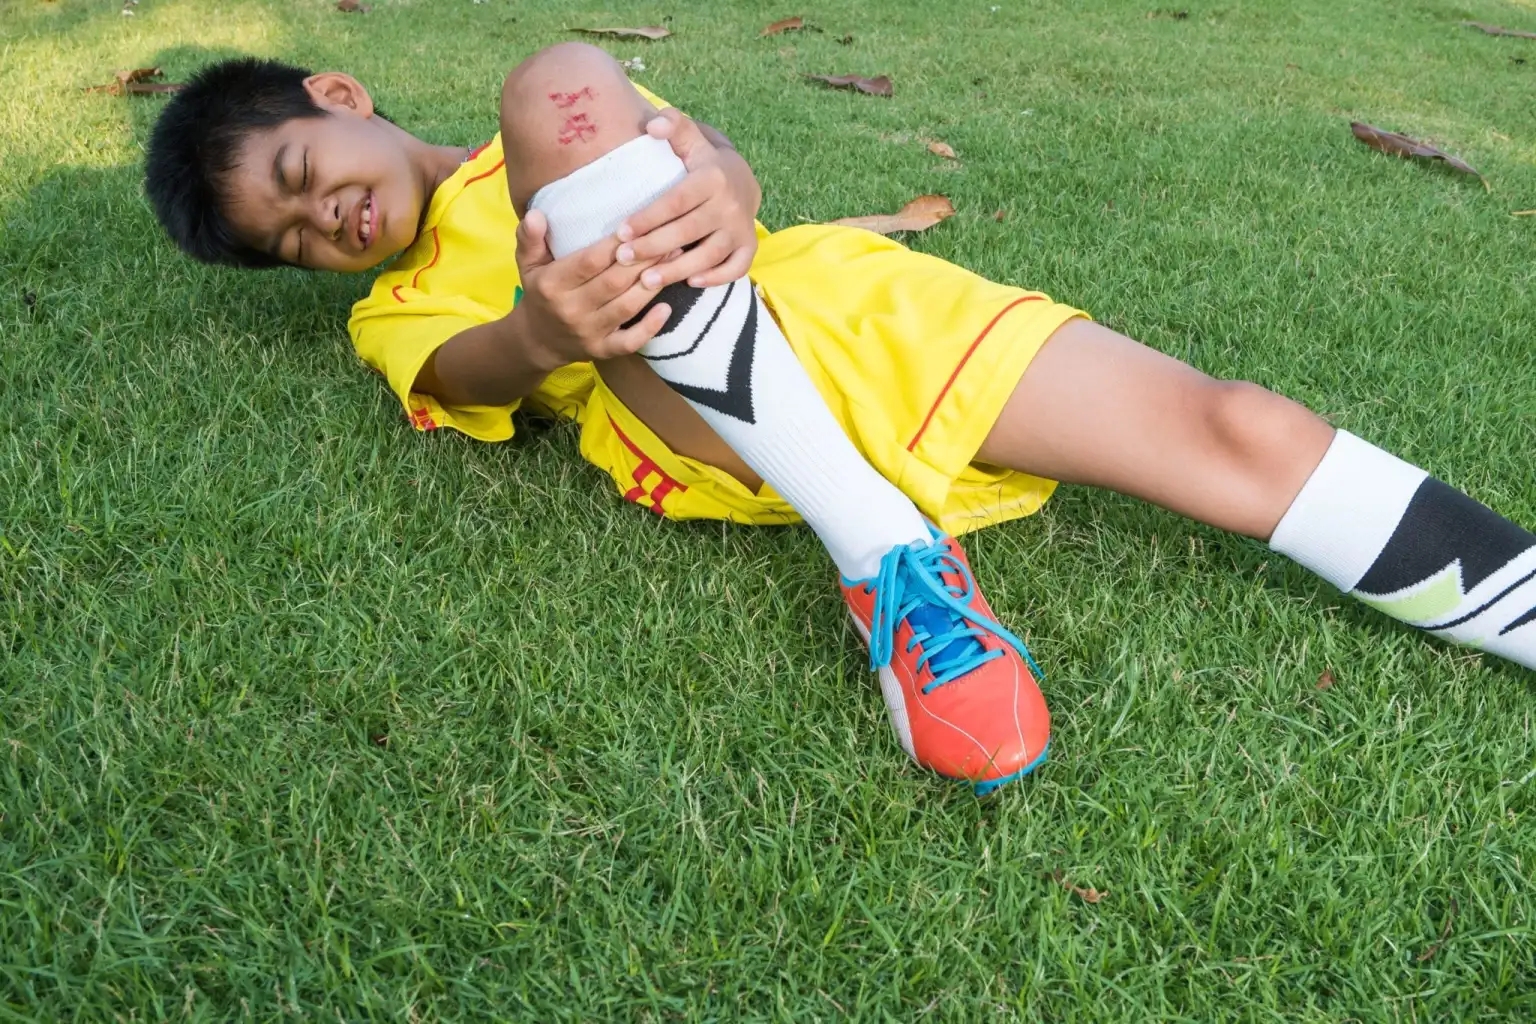 Kids-sports-injuries